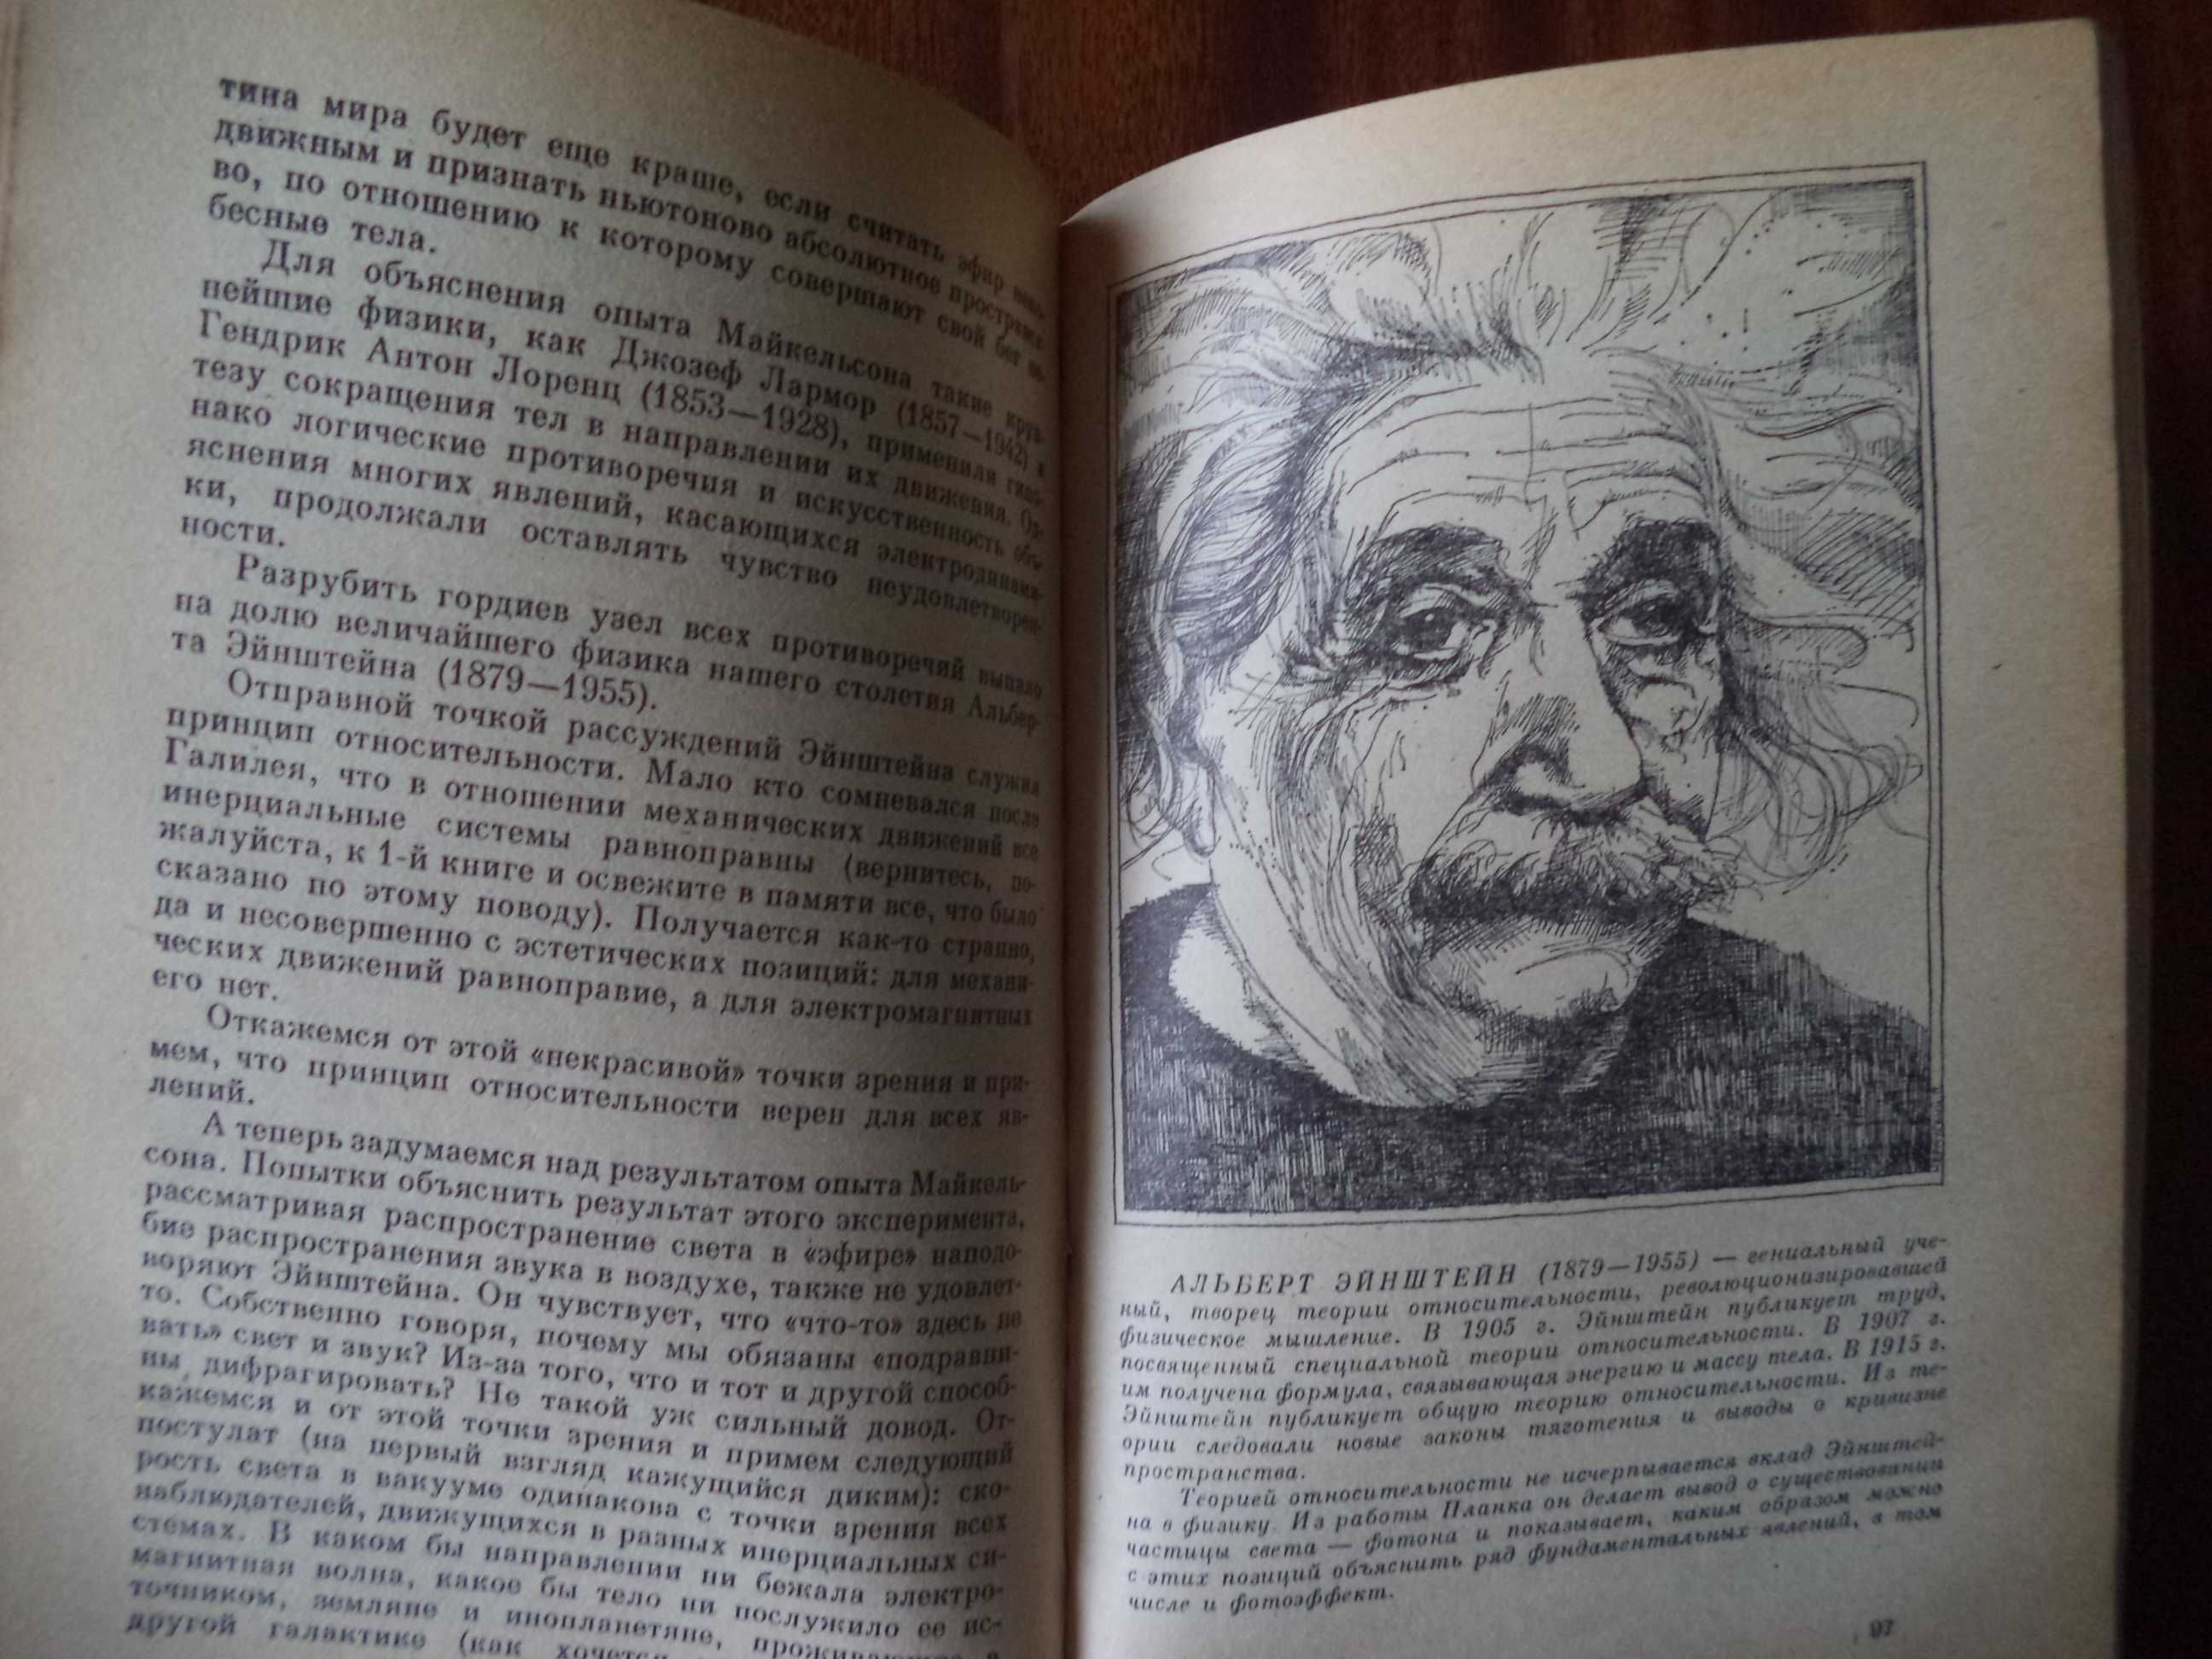 Физика для всех. Книги Китайгородского «Молекулы» и «Фотоны и ядра»